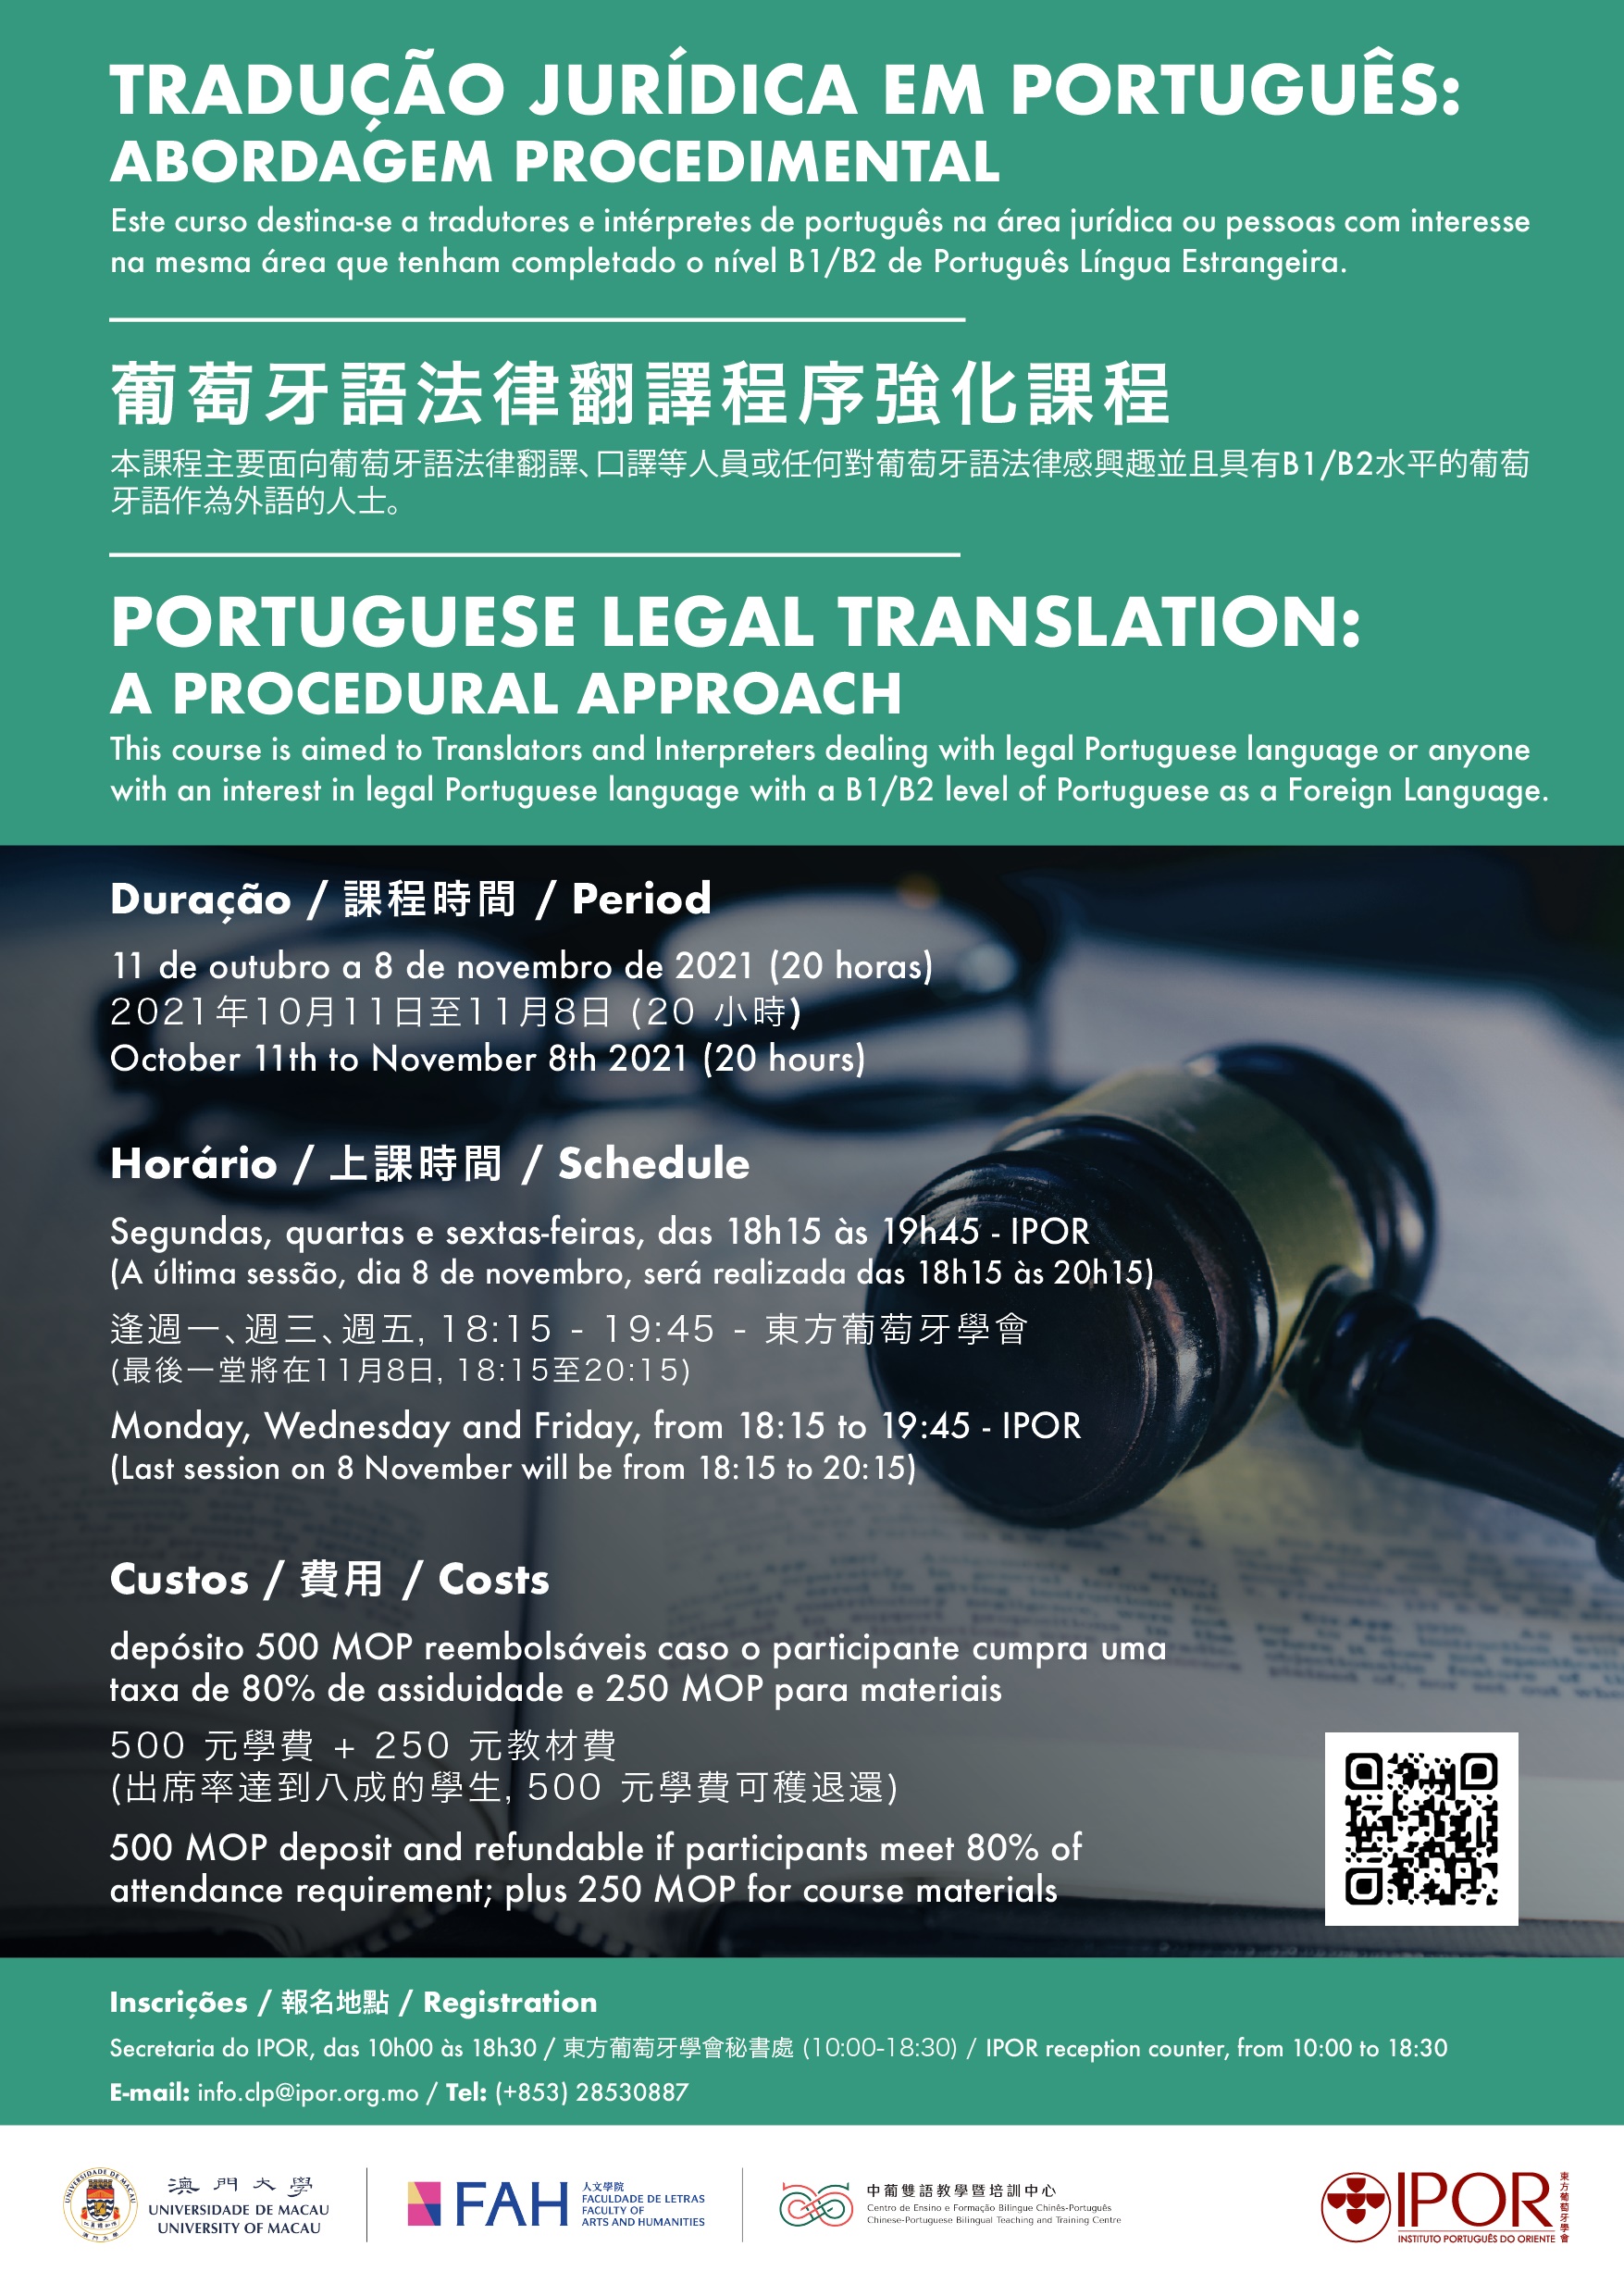 FAH-CPC-IPOR: Tradução Jurídica em Português: Abordagem